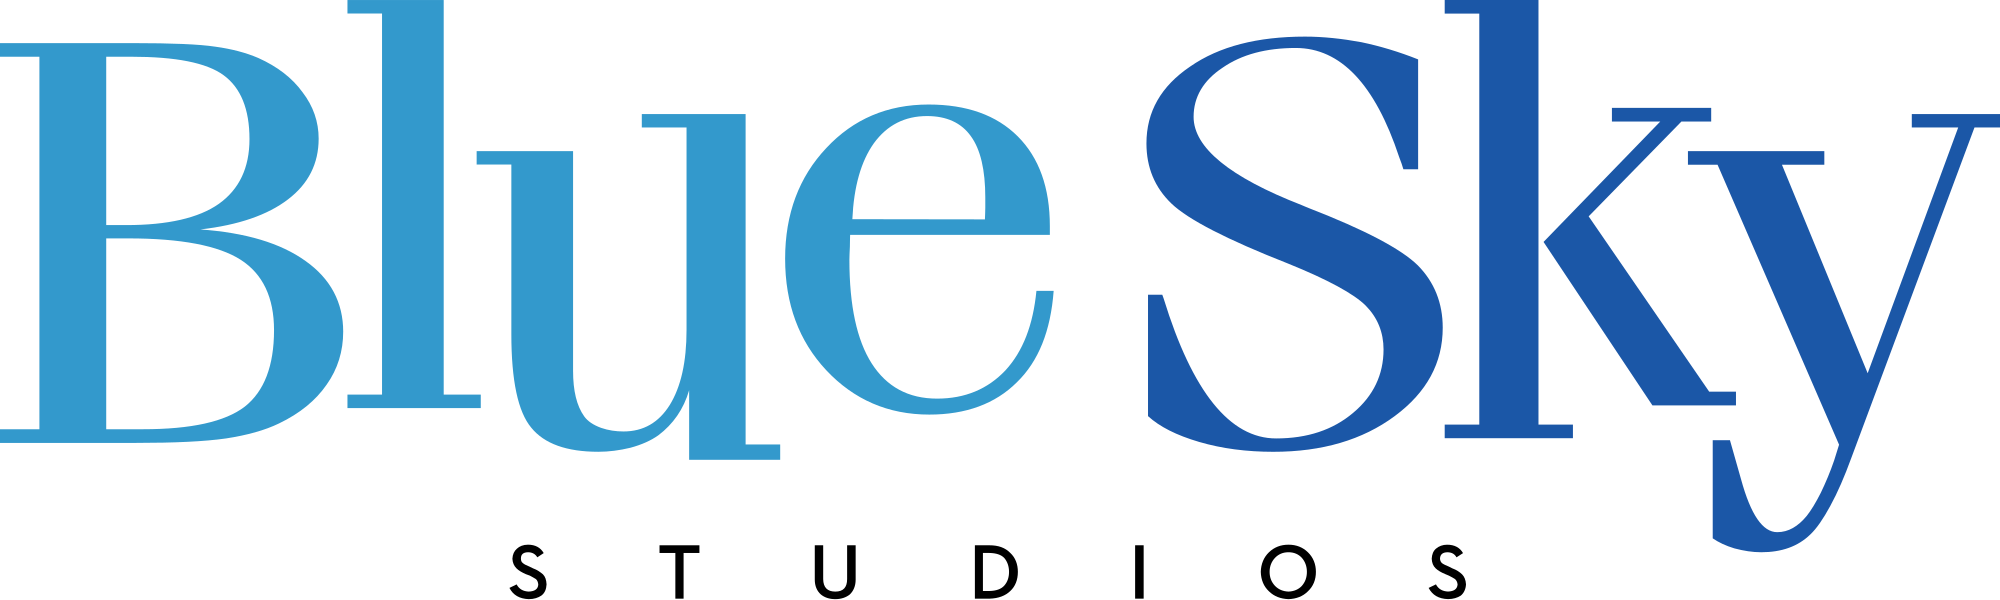 Blue Sky Studios Logo